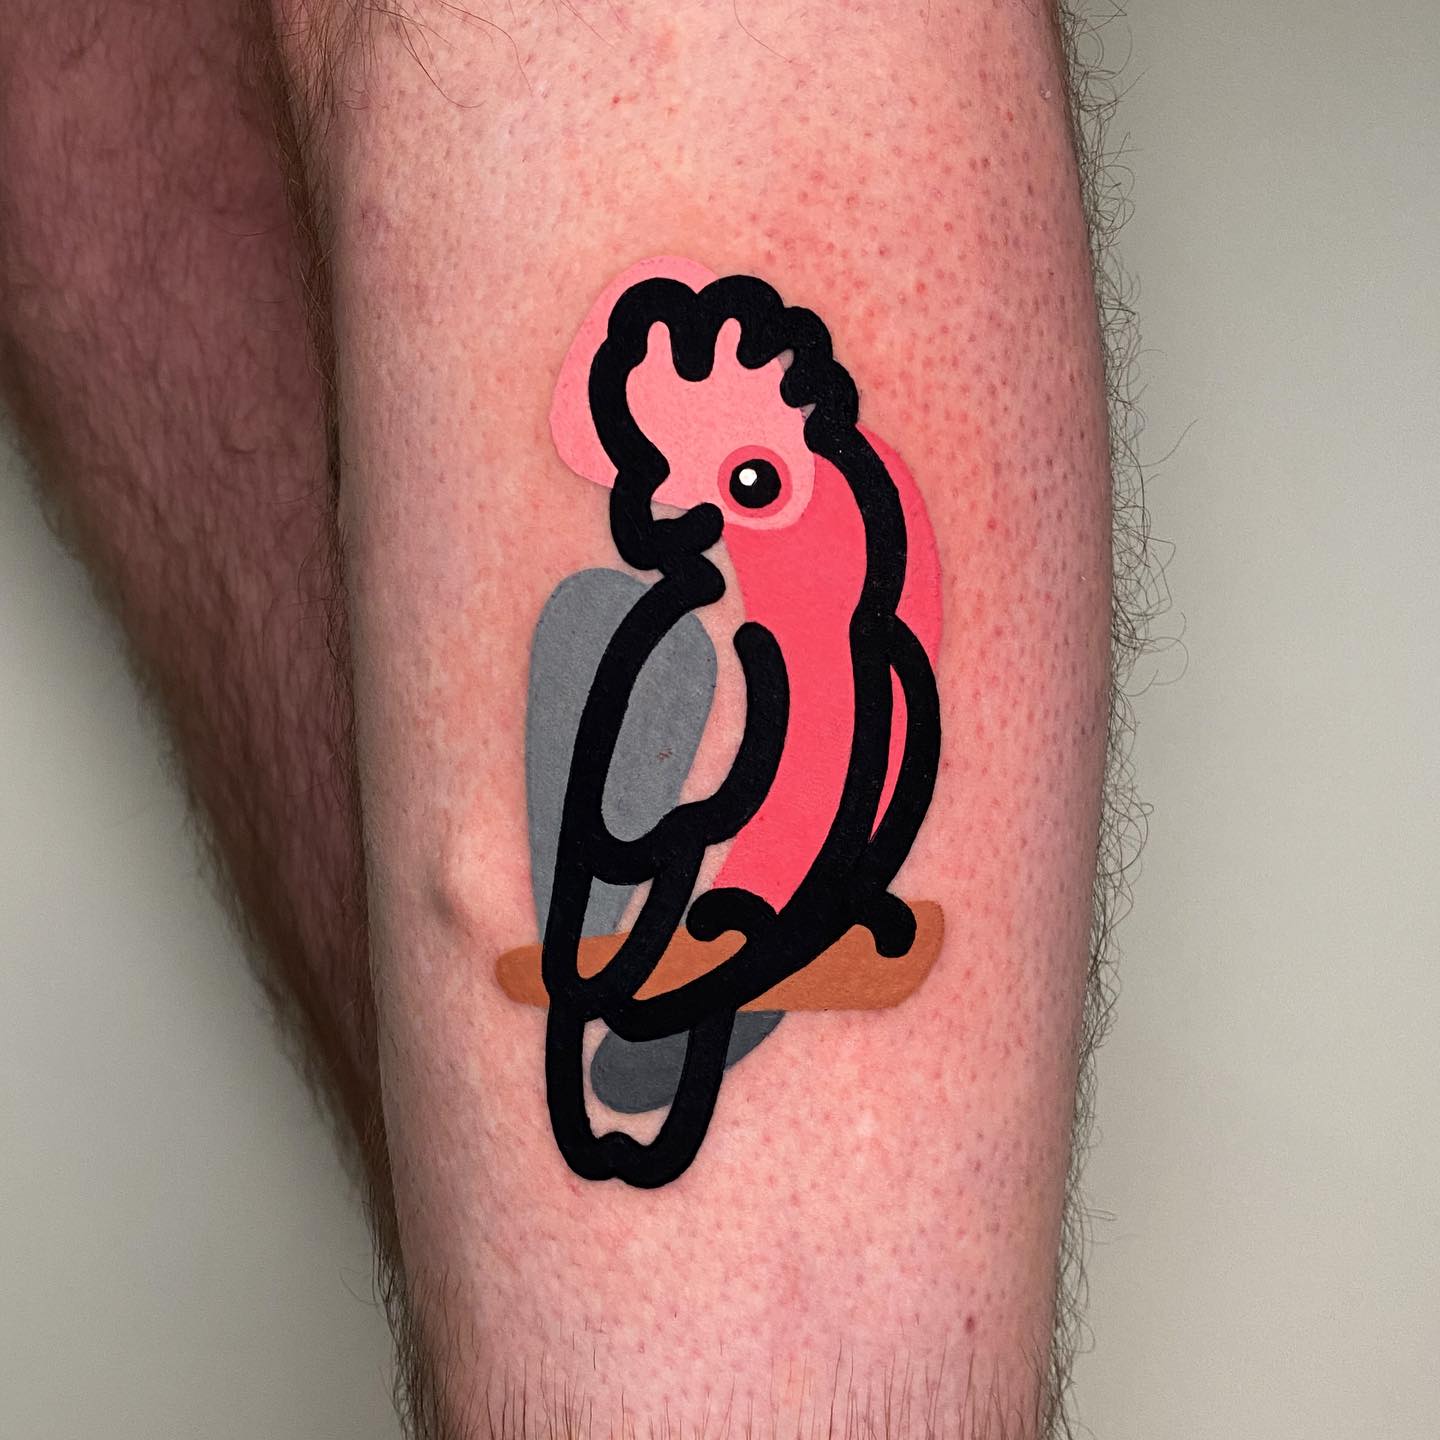 Bird Tattoos for Men 15